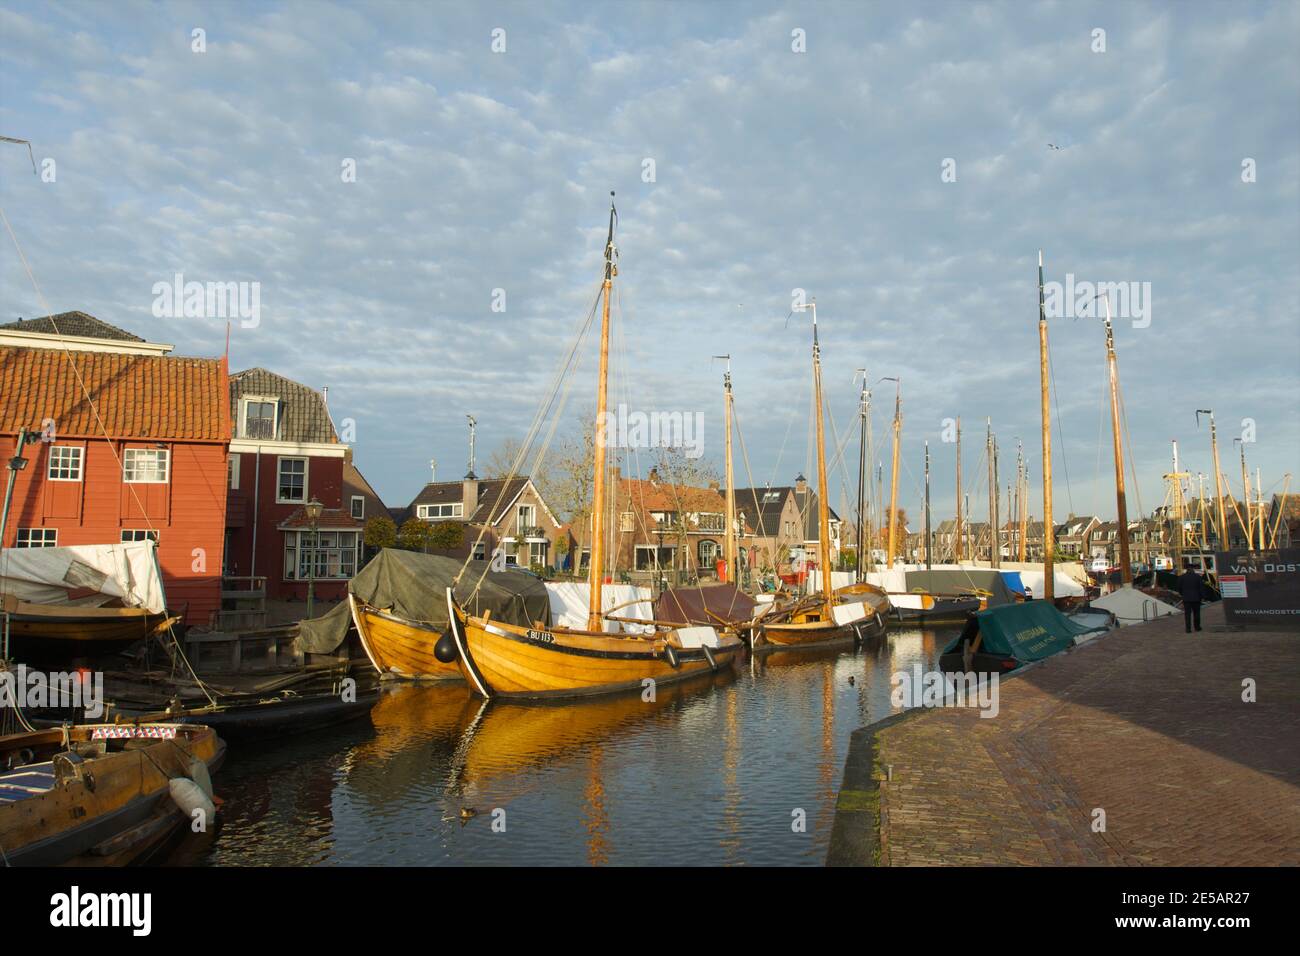 Ingresso al museo all'aperto con il porto del villaggio di Spakenburg con navi in legno e il cantiere navale olandese Foto Stock